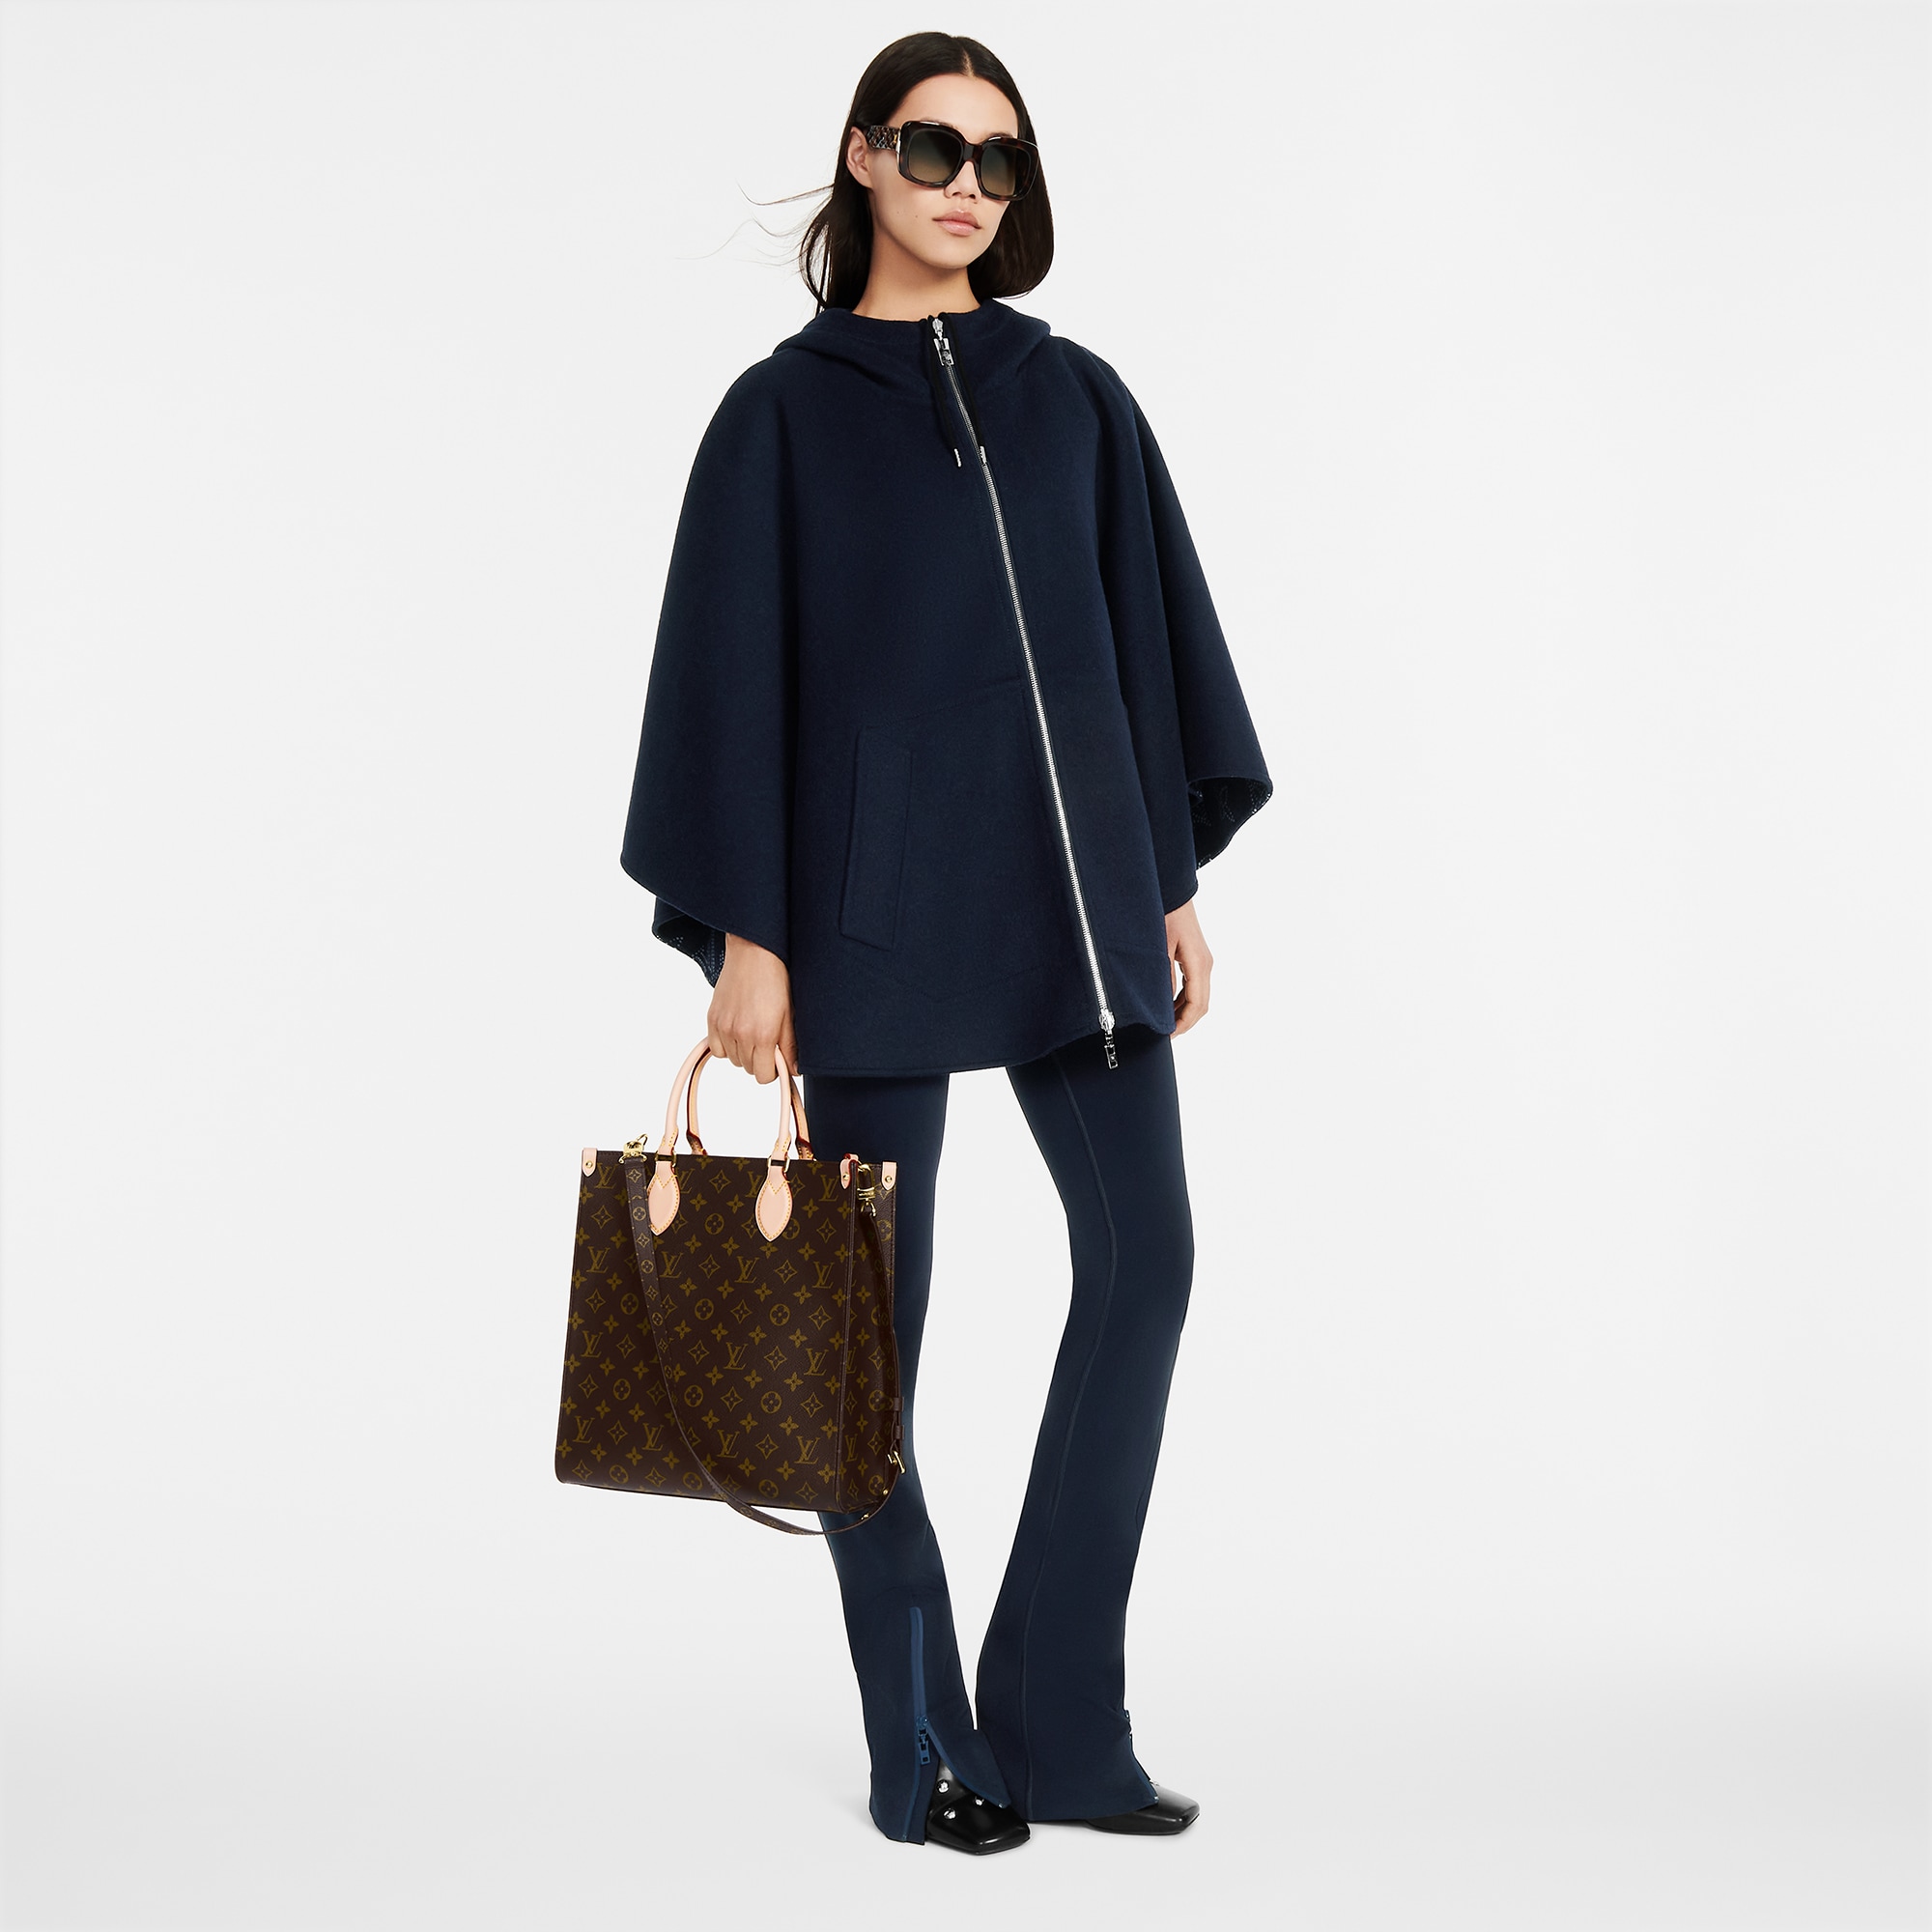 Louis Vuitton Sac Plat PM Monogram – Women – Handbags M46263 Sac Plat PM